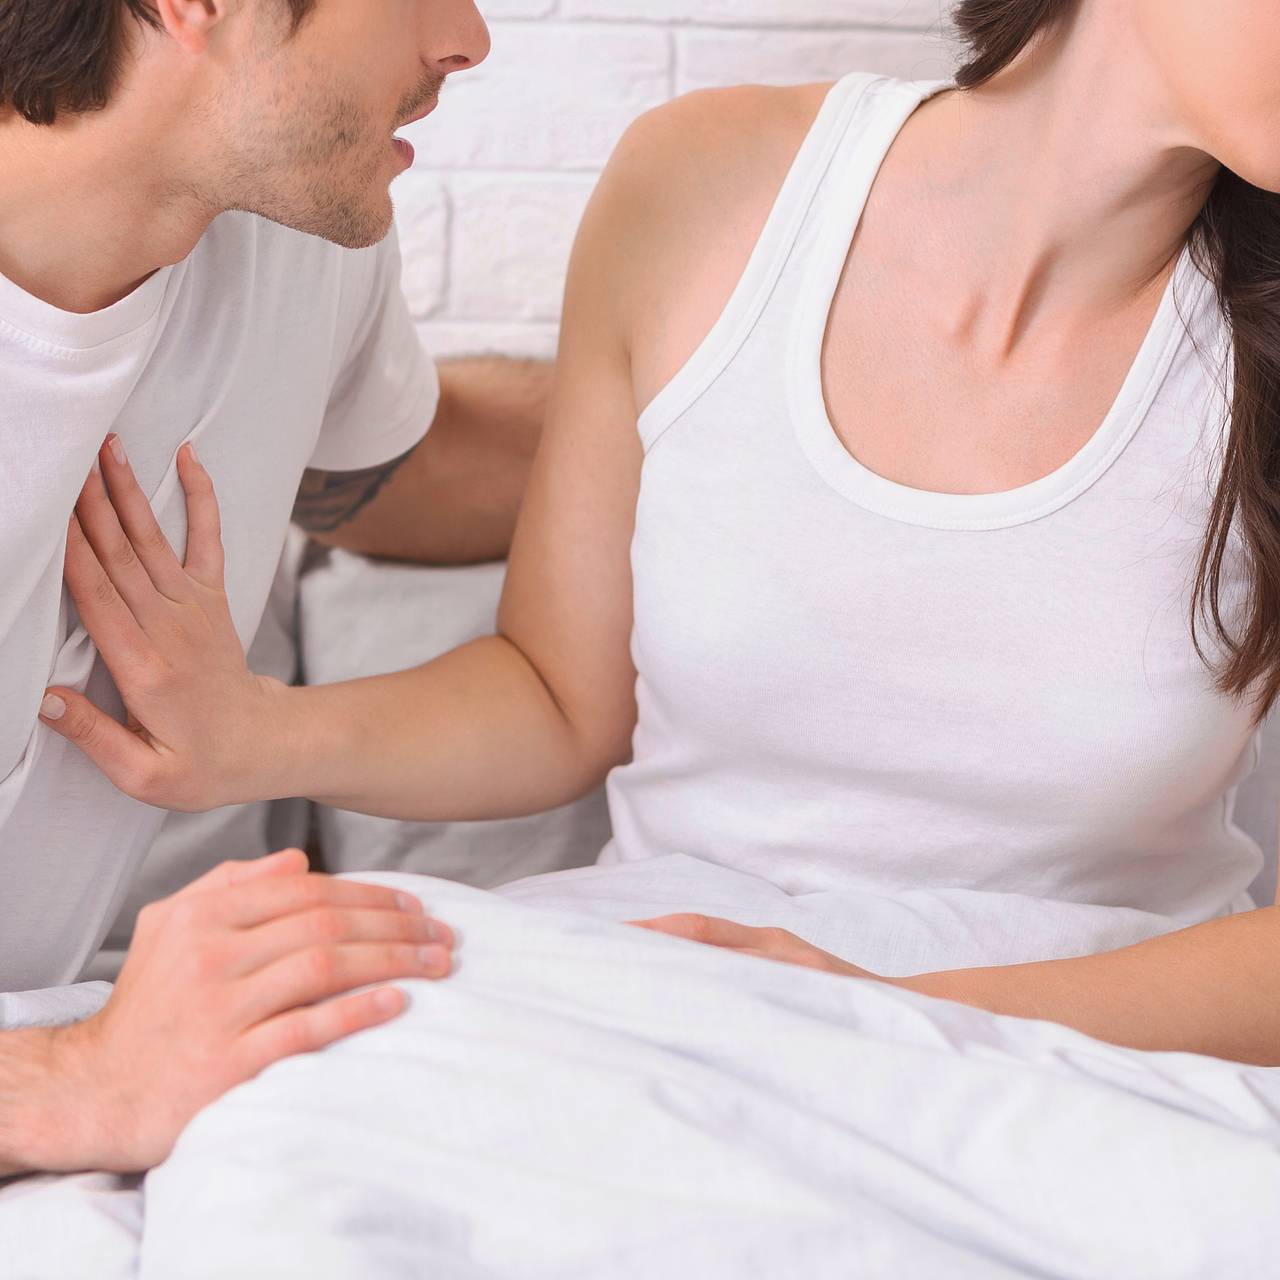 Сексуальная аверсия: Почему секс может вызывать отвращение?